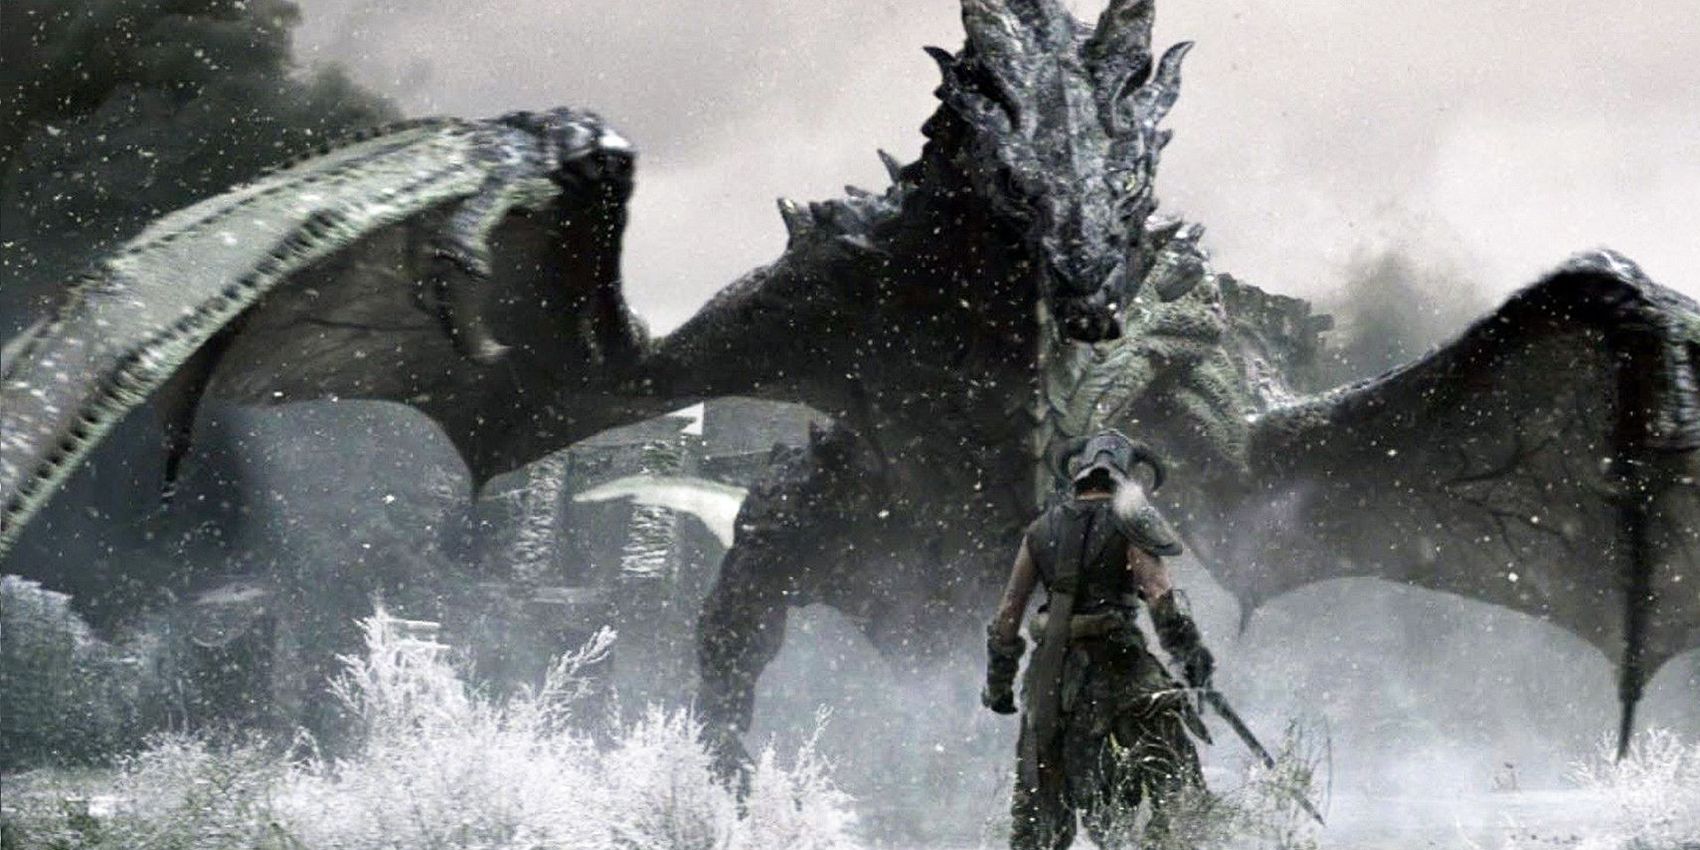 Skyrim Dragon facing Dragonborn